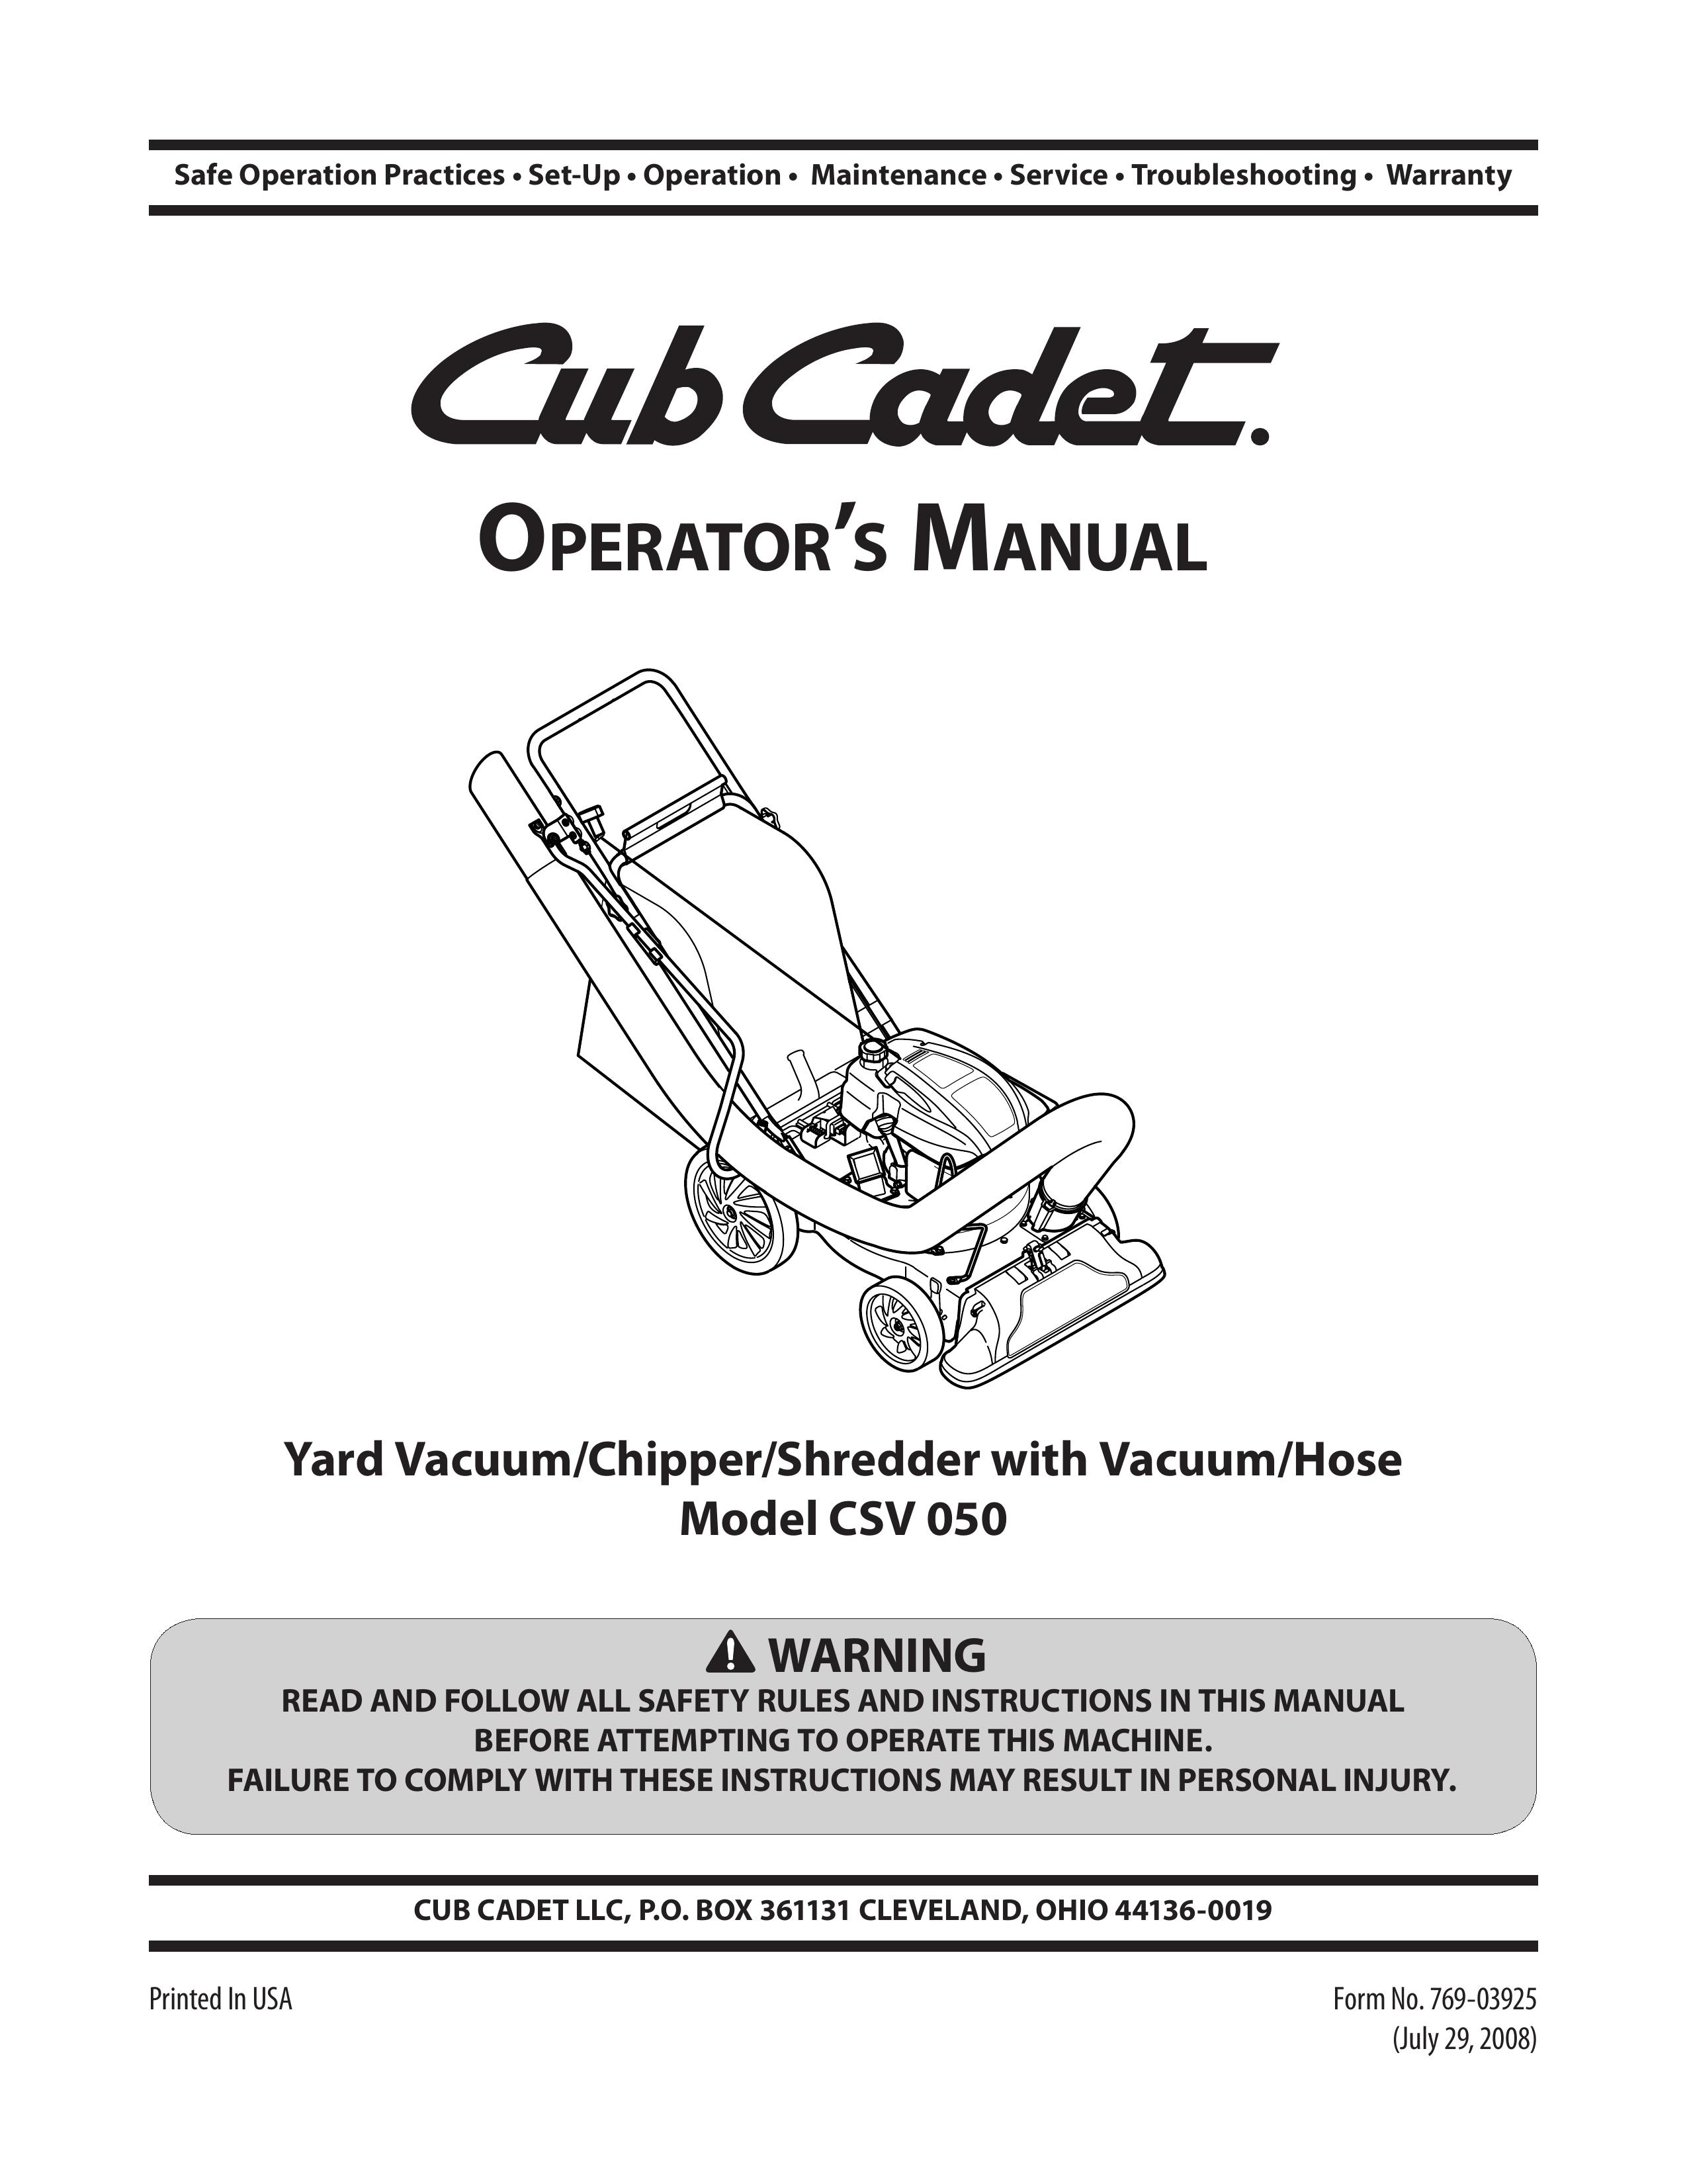 Cub Cadet CSV 050 Yard Vacuum User Manual